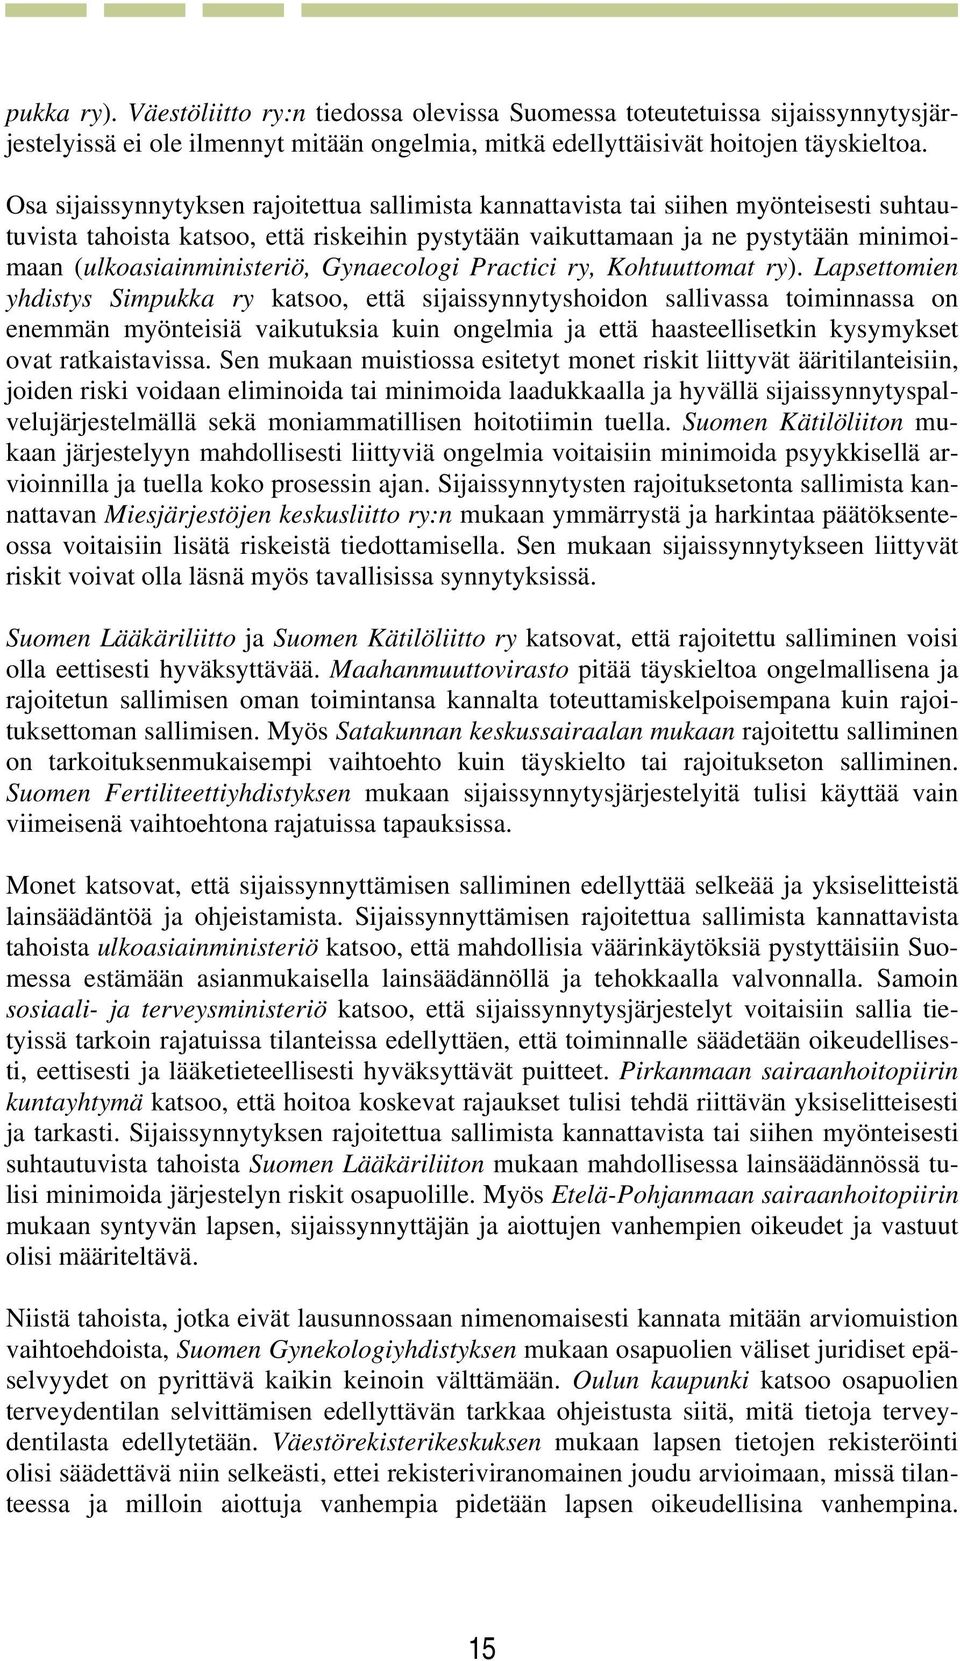 (ulkoasiainministeriö, Gynaecologi Practici ry, Kohtuuttomat ry).